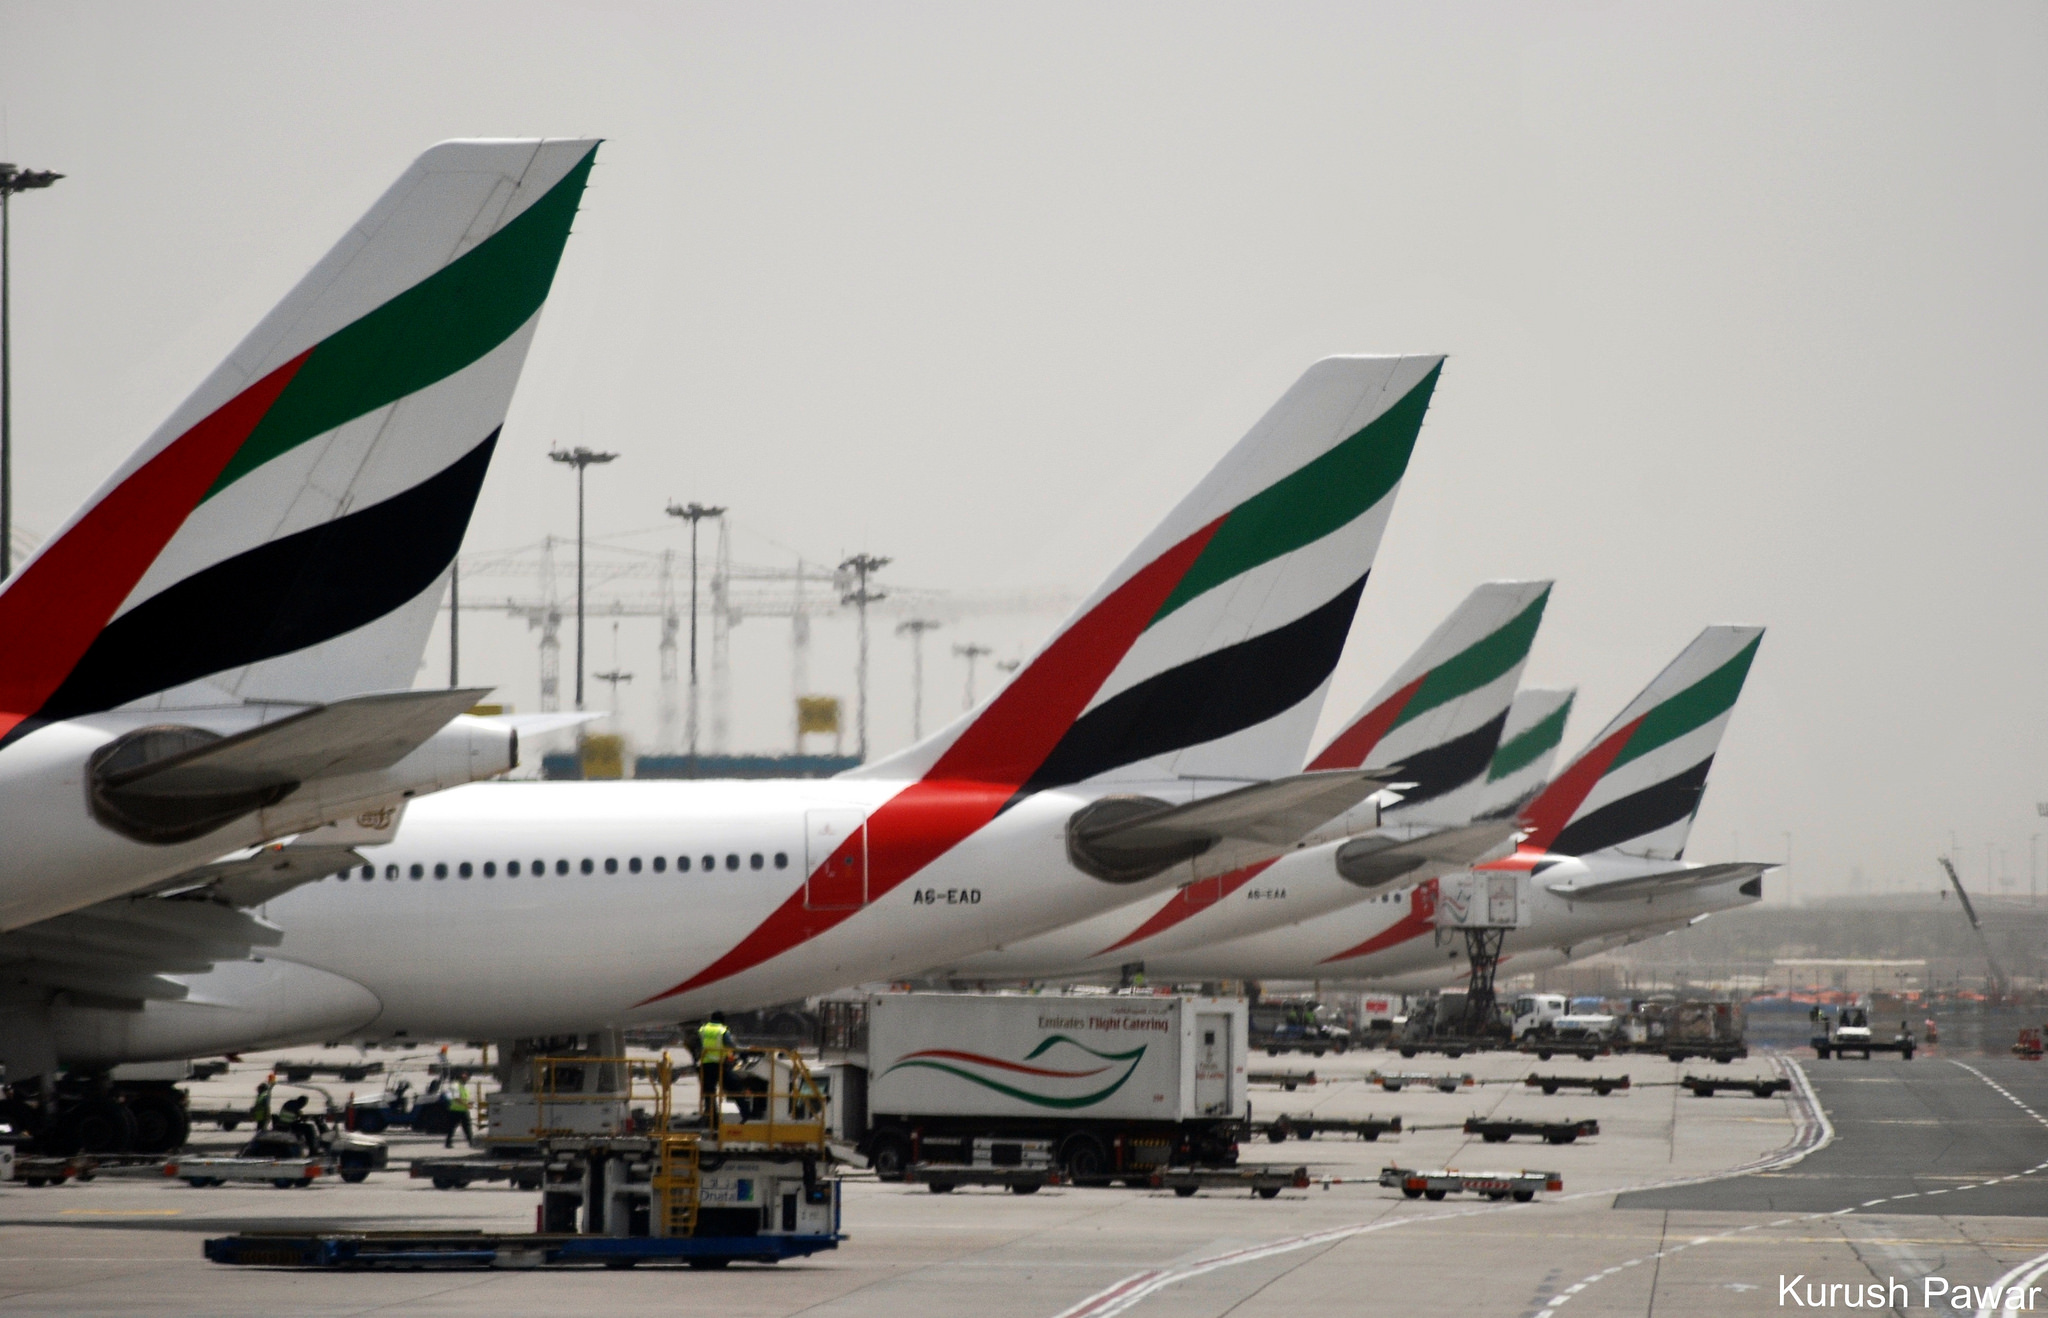 How to get the Cheapest Flights to Dubai - Dubai Blog